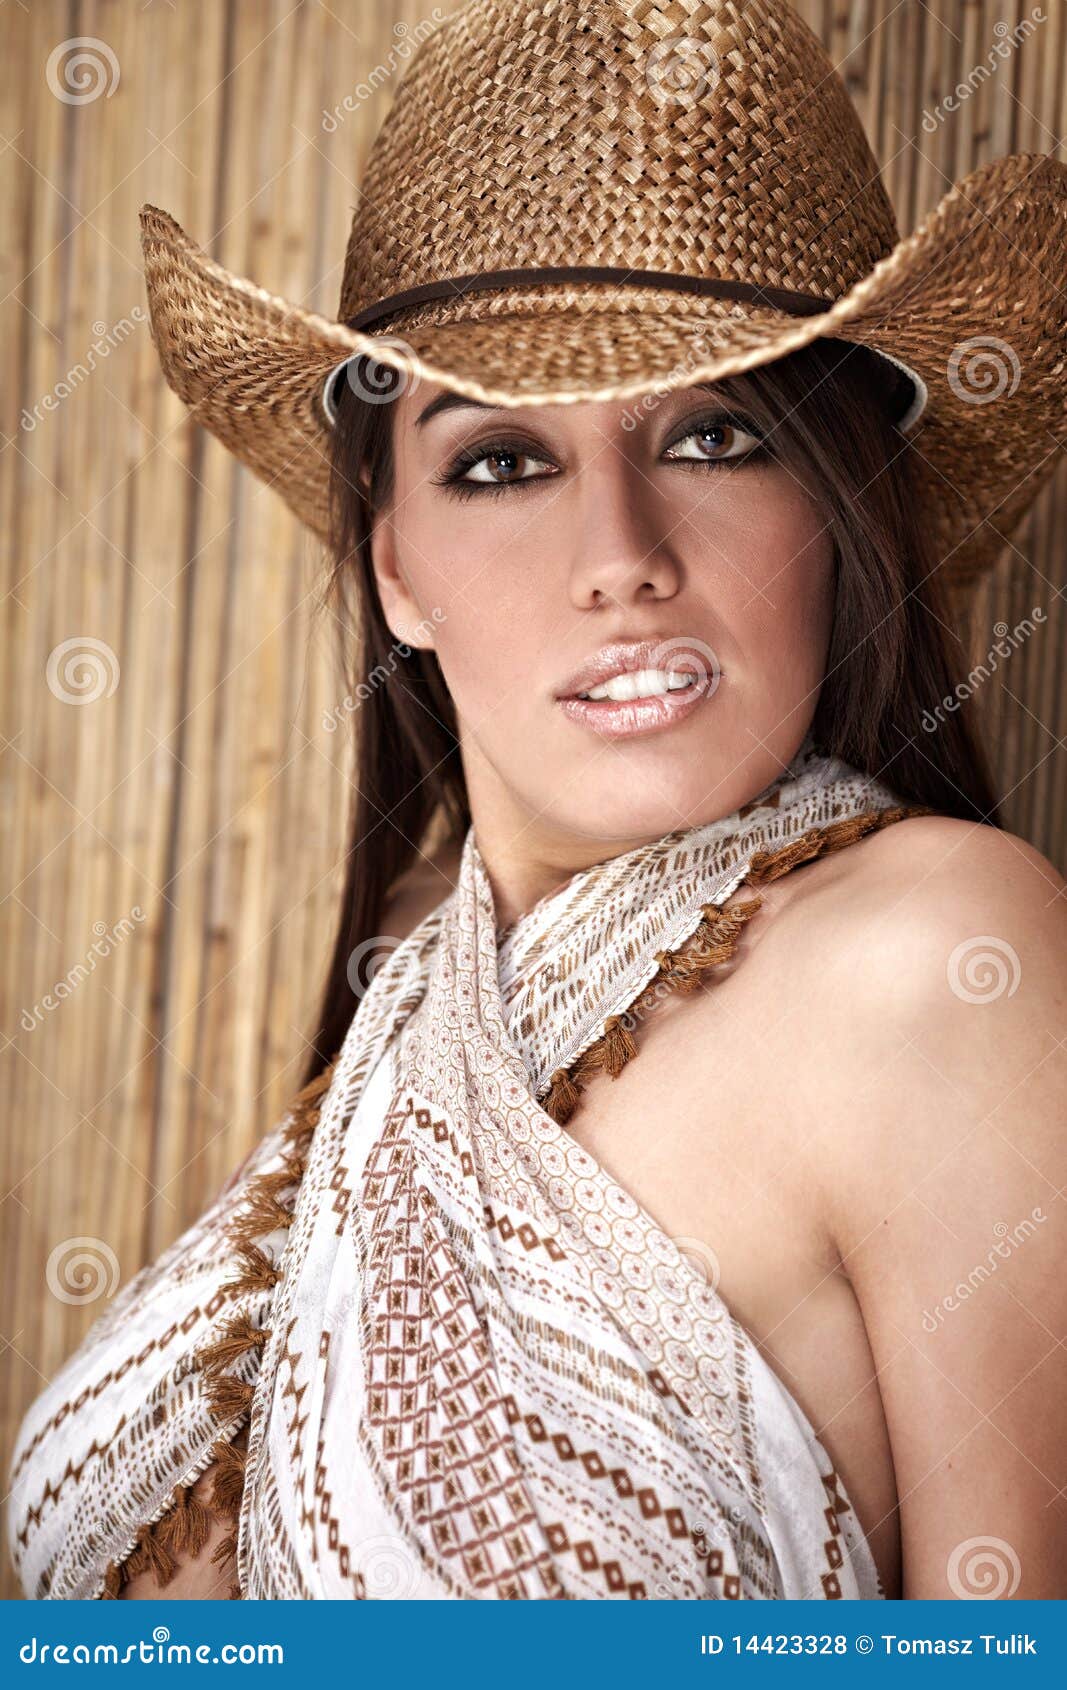 beautiful-sexy-cowgirl-14423328.jpg